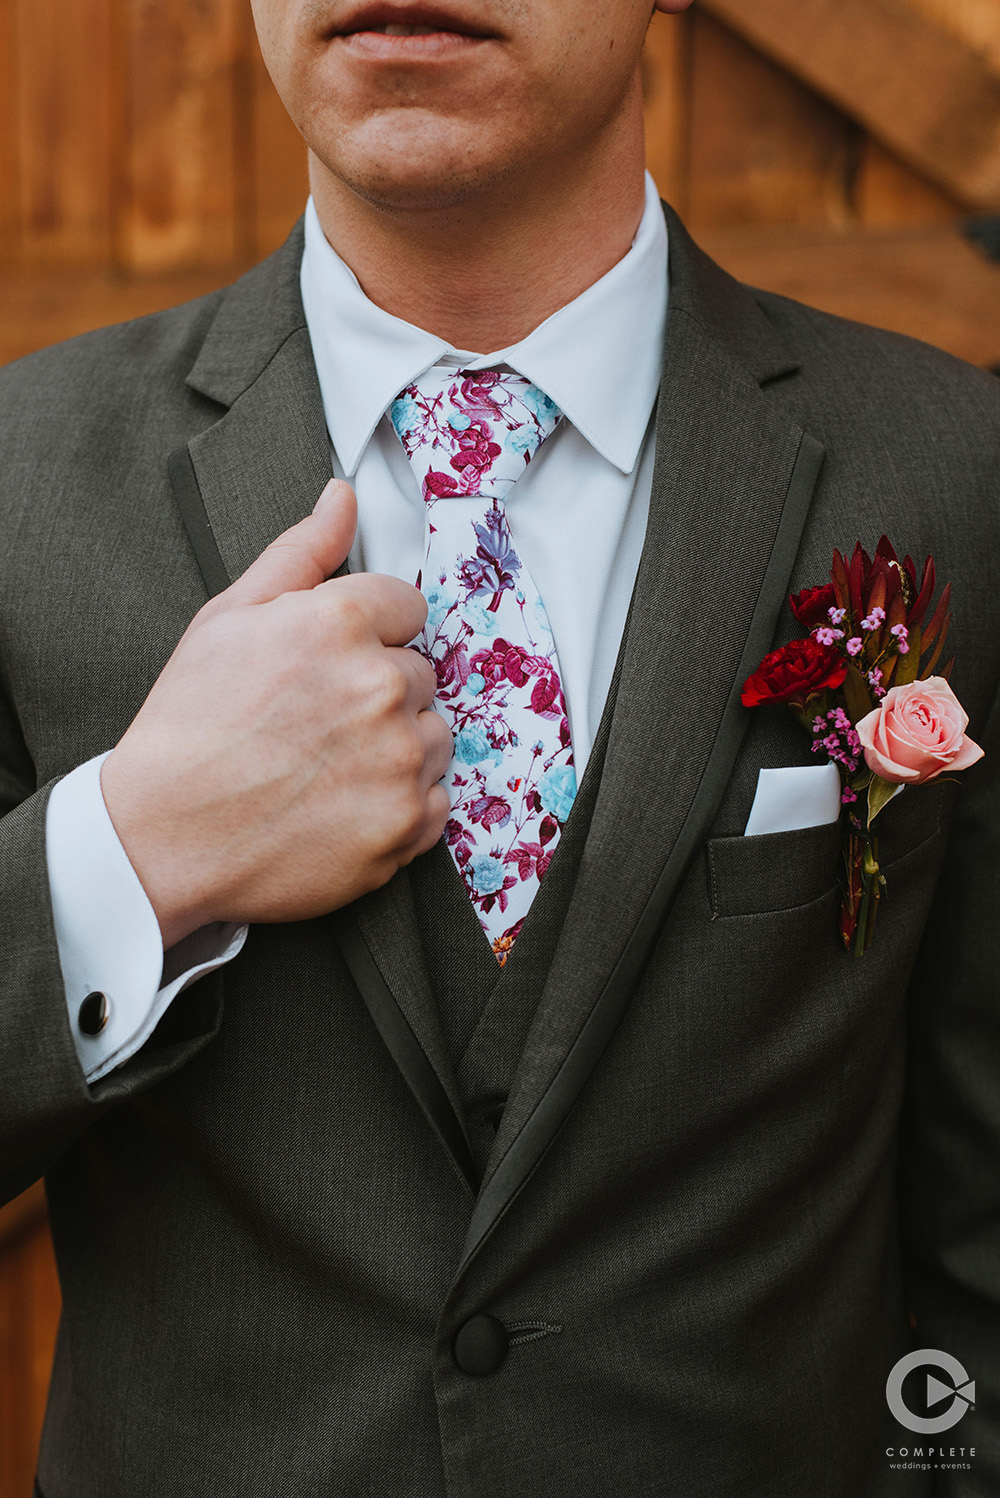 wedding colors in groom's tie